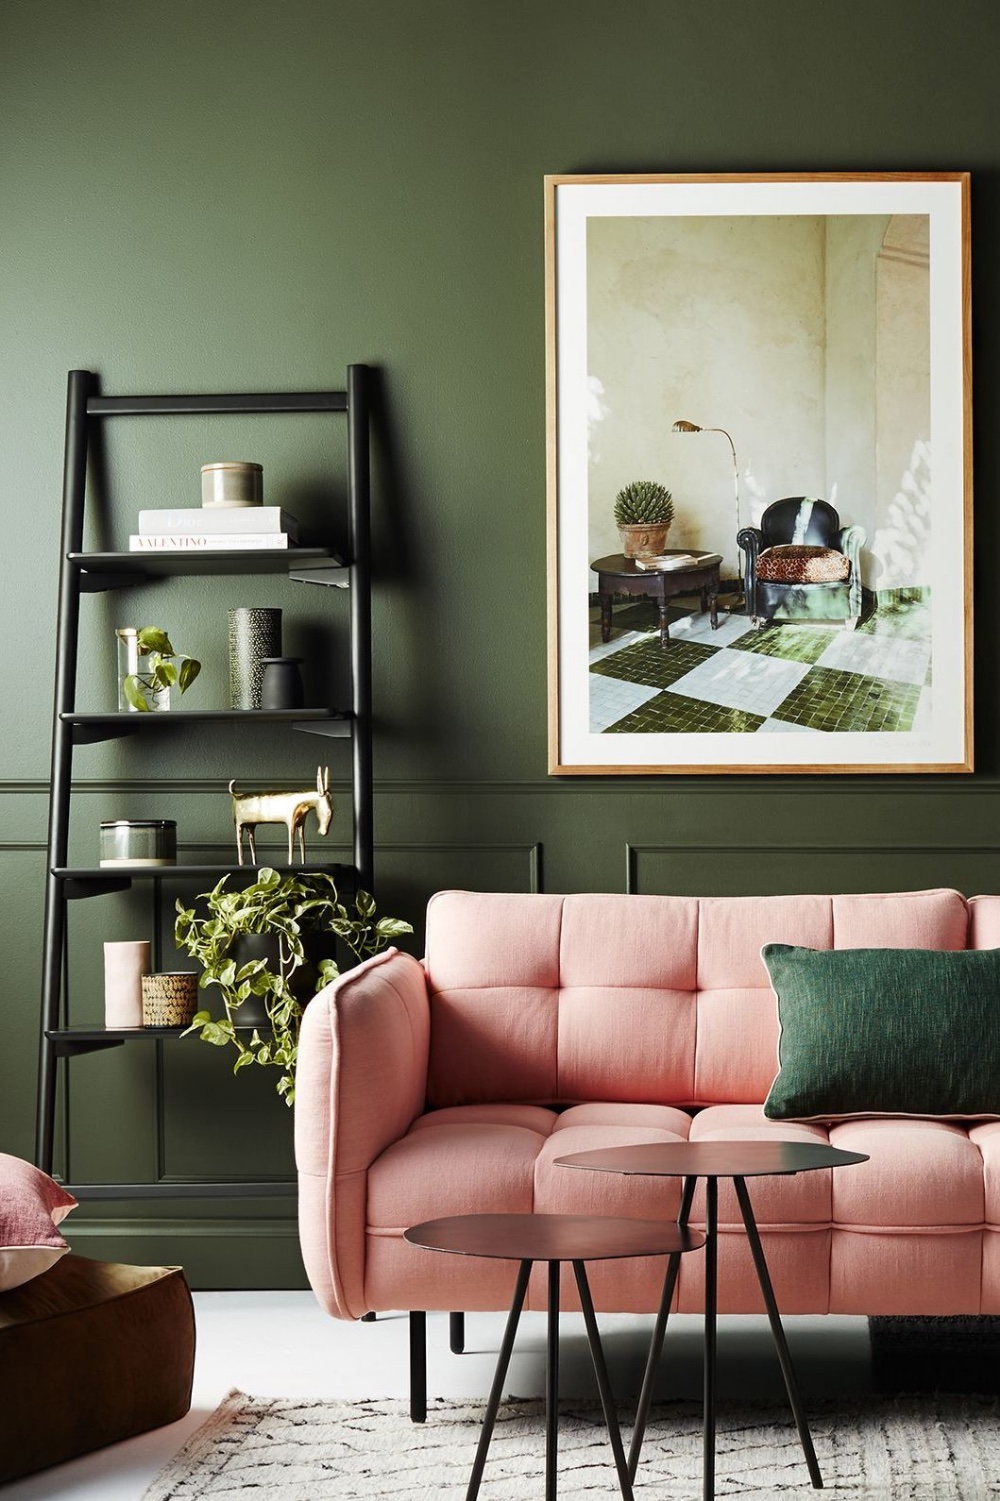 Sala pintada com um tom de verde mais fechado e decorada com alguns objetos da cor rosa.